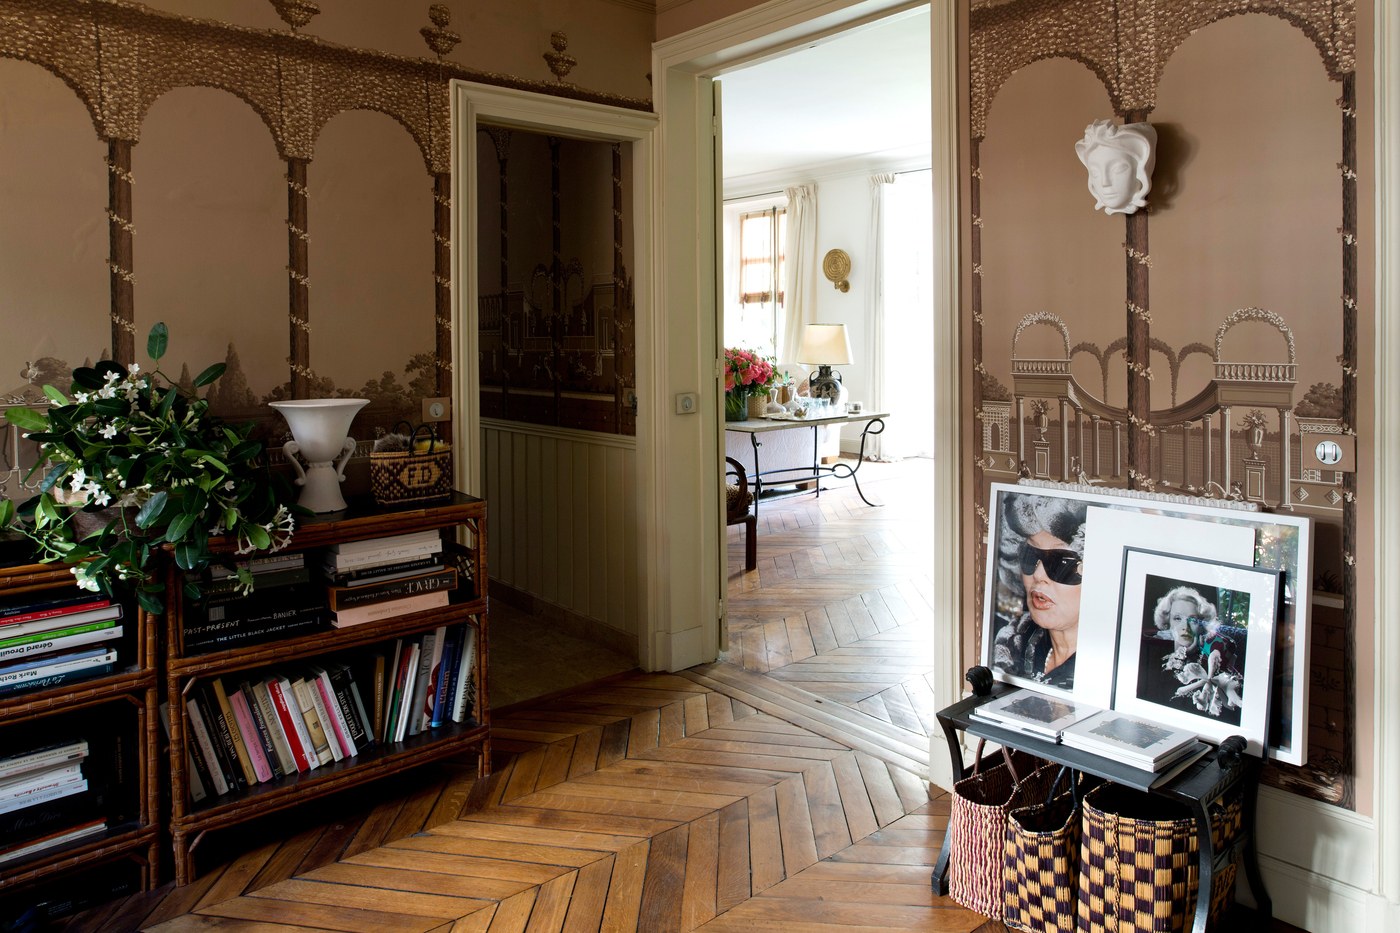 Décor Inspiration | At Home With: Françoise Dumas, Paris